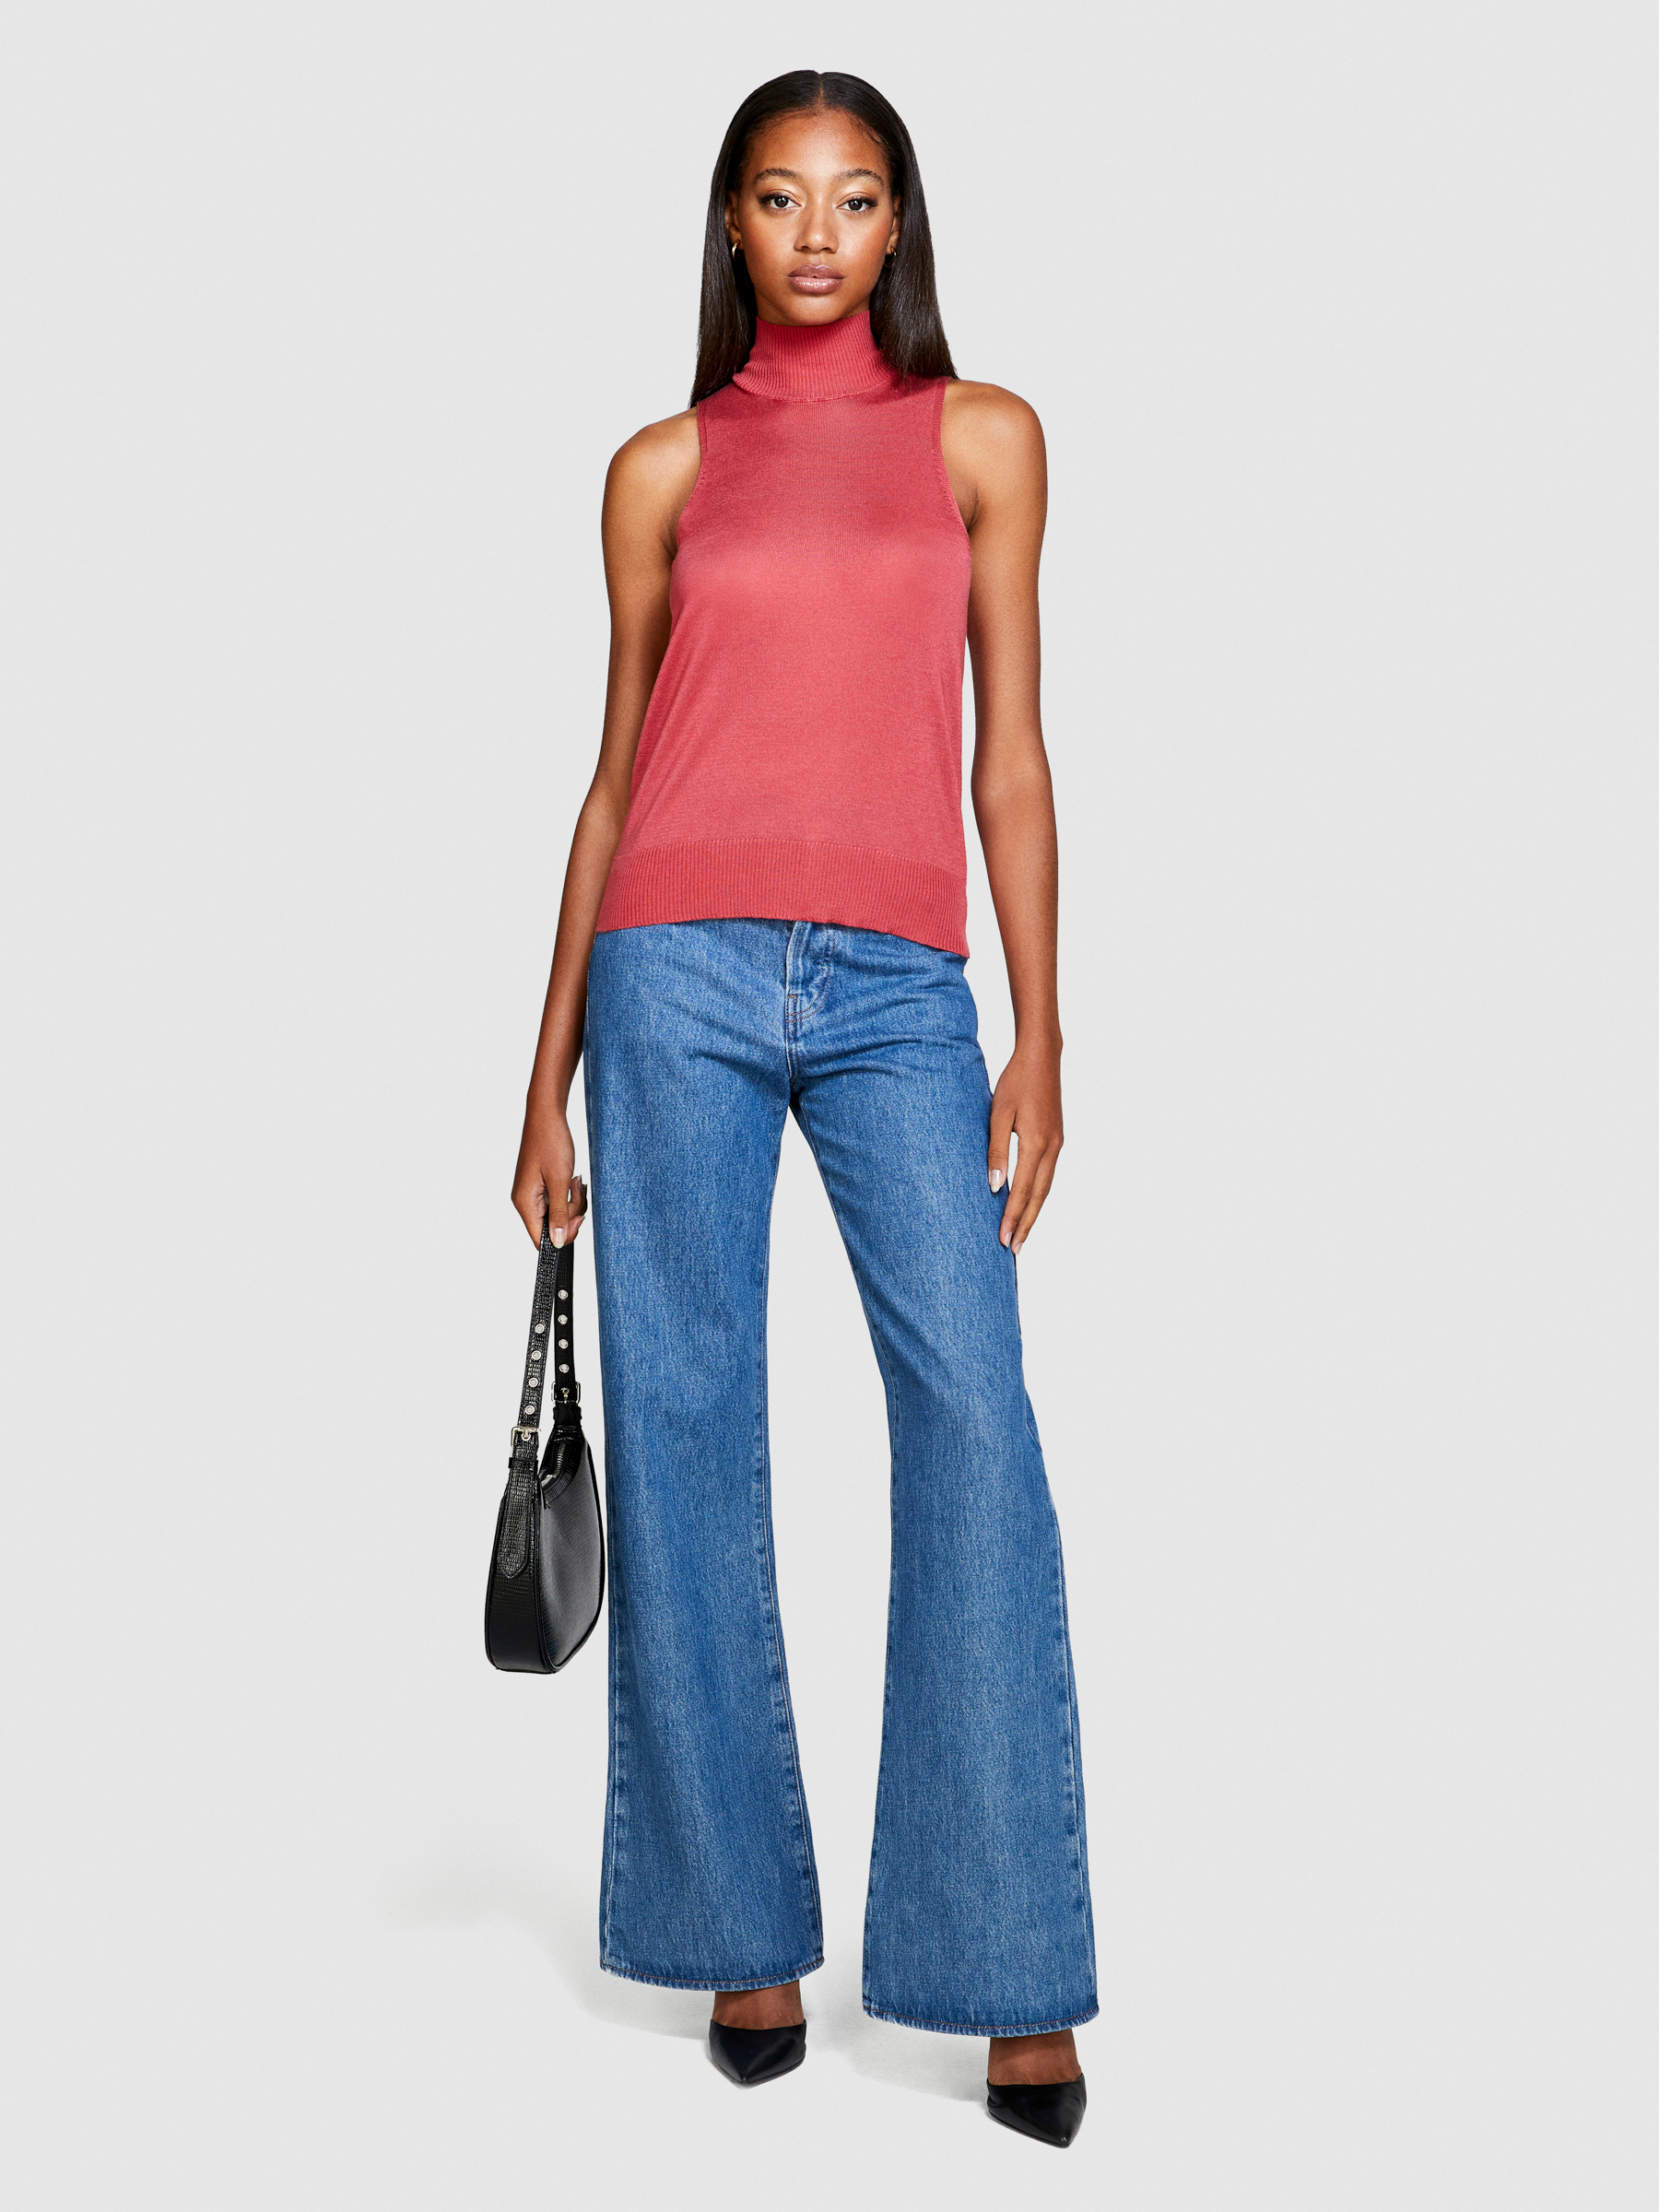 Sisley - Knit Turtleneck Top, Woman, Coral, Size: L